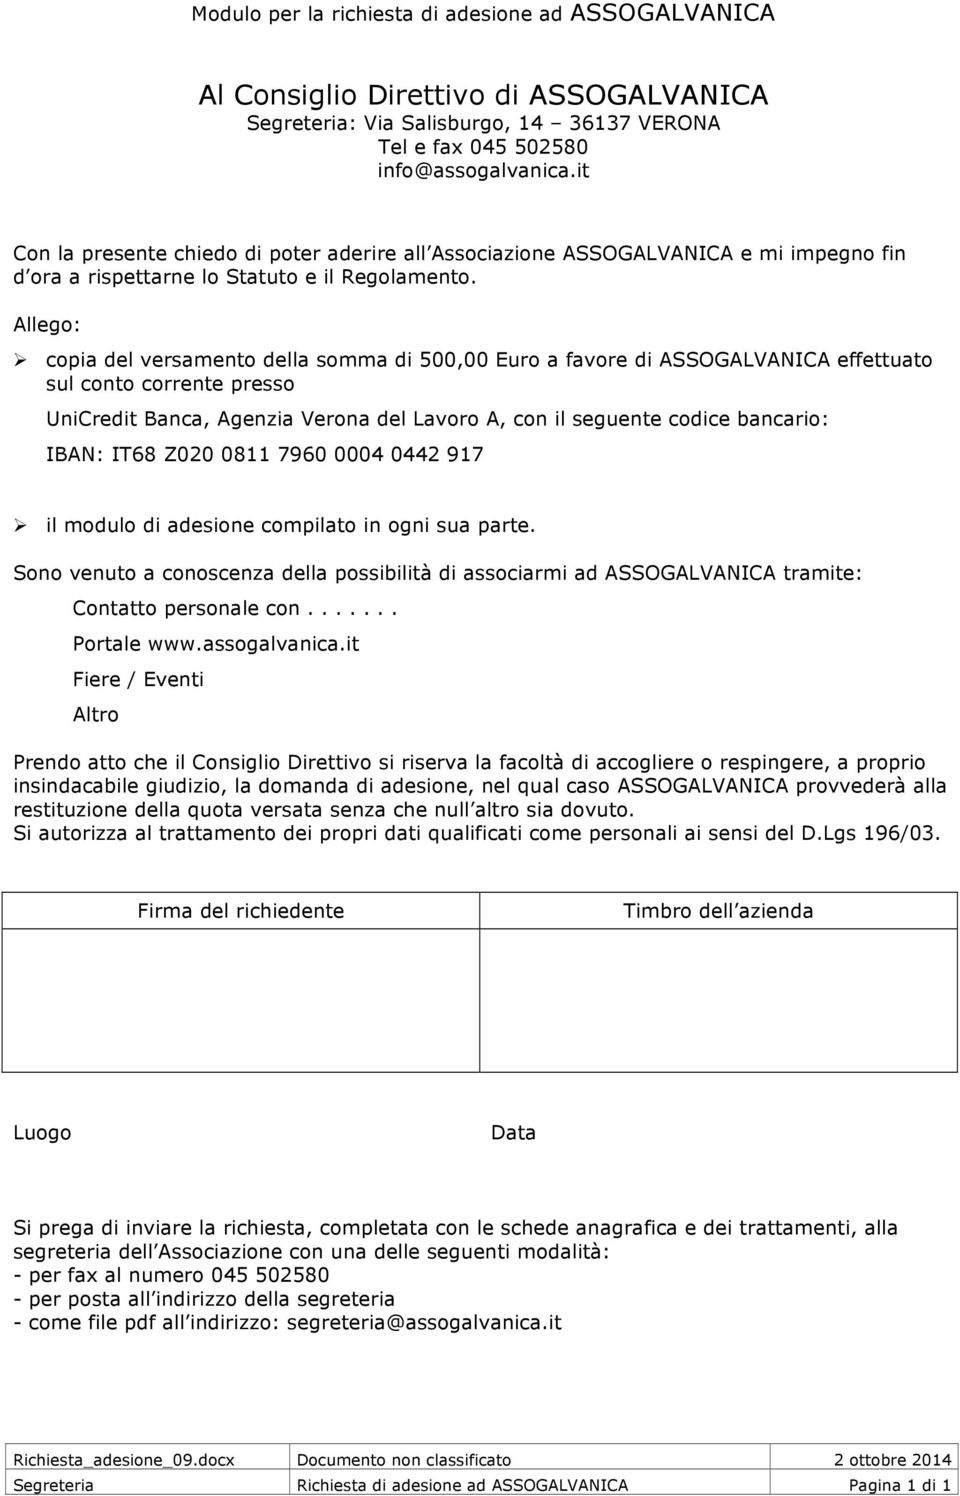 Allego: copia del versamento della somma di 500,00 Euro a favore di ASSOGALVANICA effettuato sul conto corrente presso UniCredit Banca, Agenzia Verona del Lavoro A, con il seguente codice bancario: